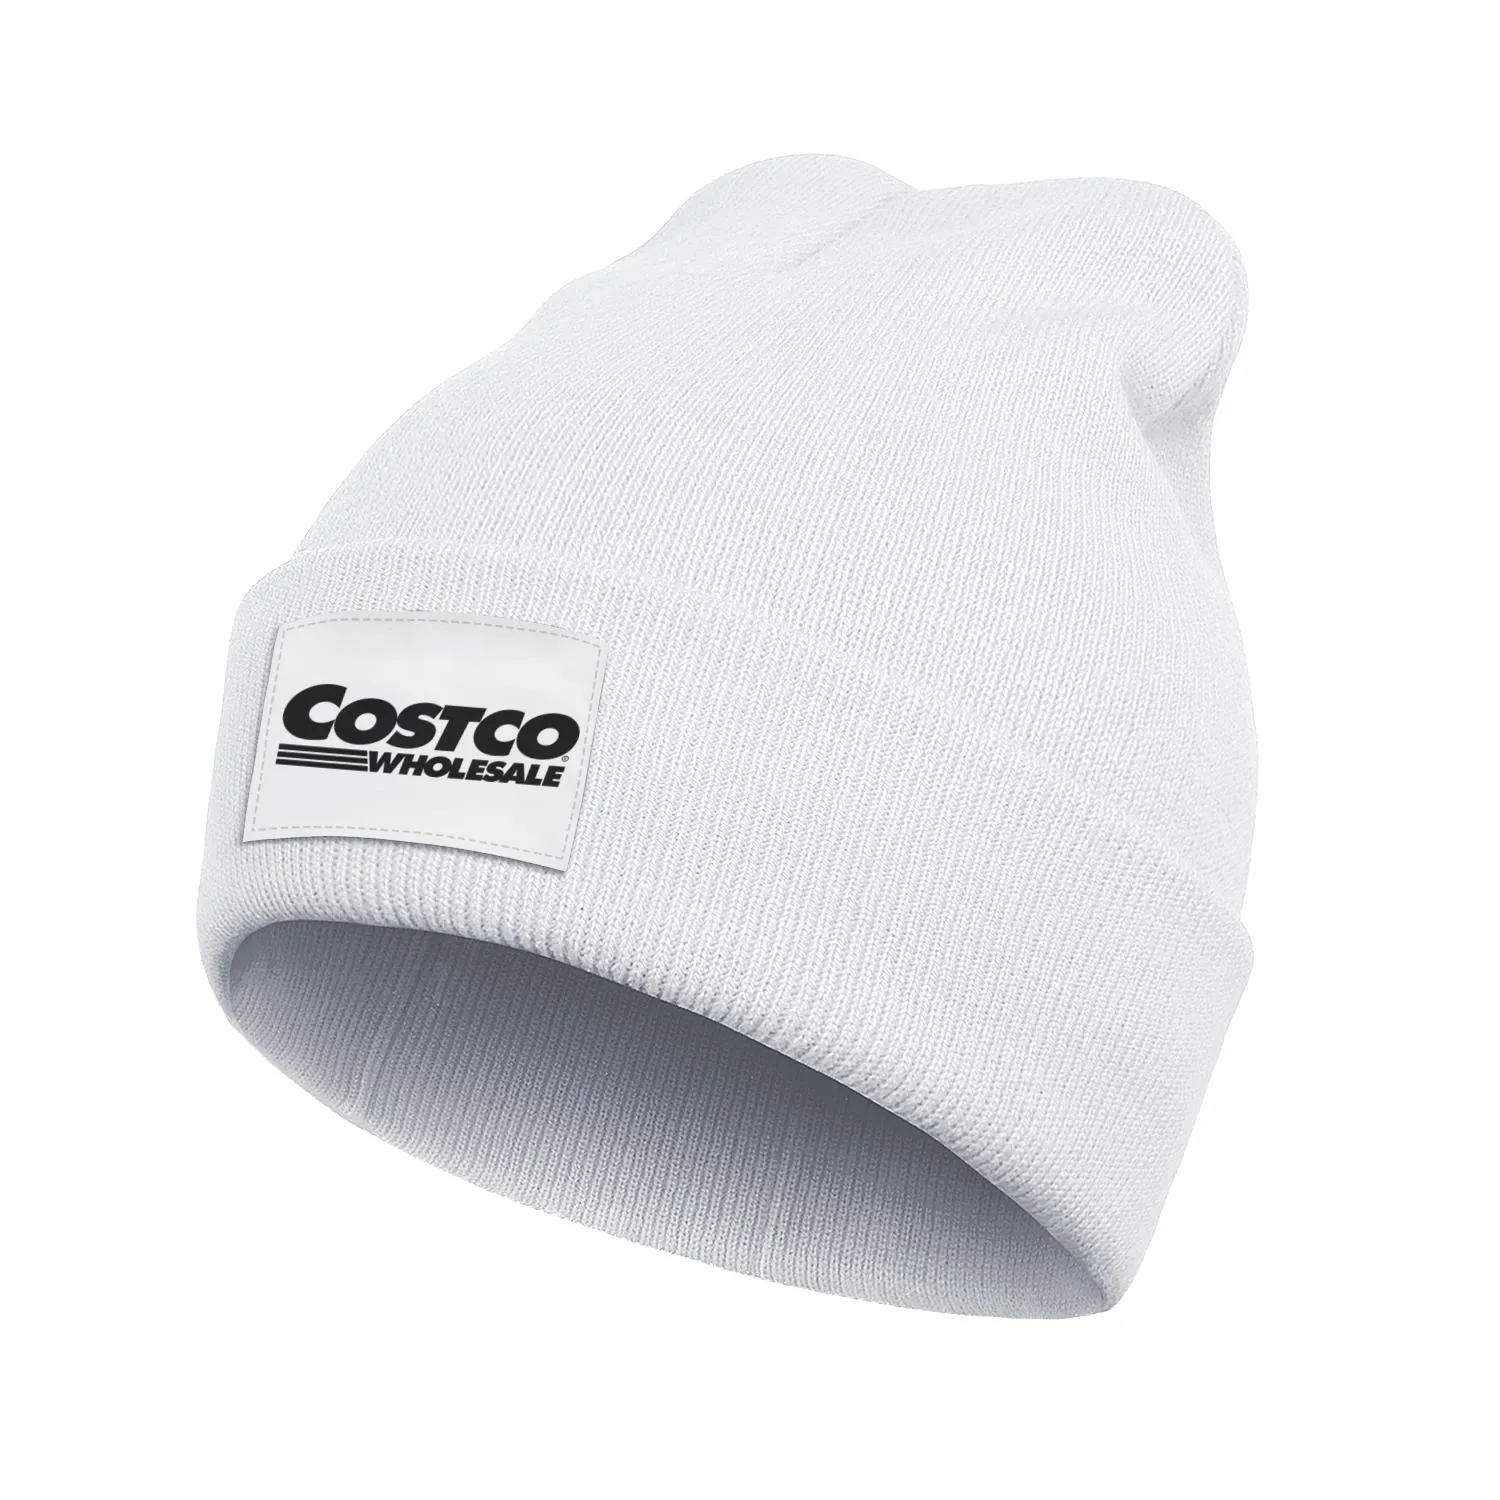 Mode Costco effet 3D entier logo drapeau américain stock montre chaude d'hiver bonnet chapeau chapeaux de laine produits en ligne rouge Origi2217178